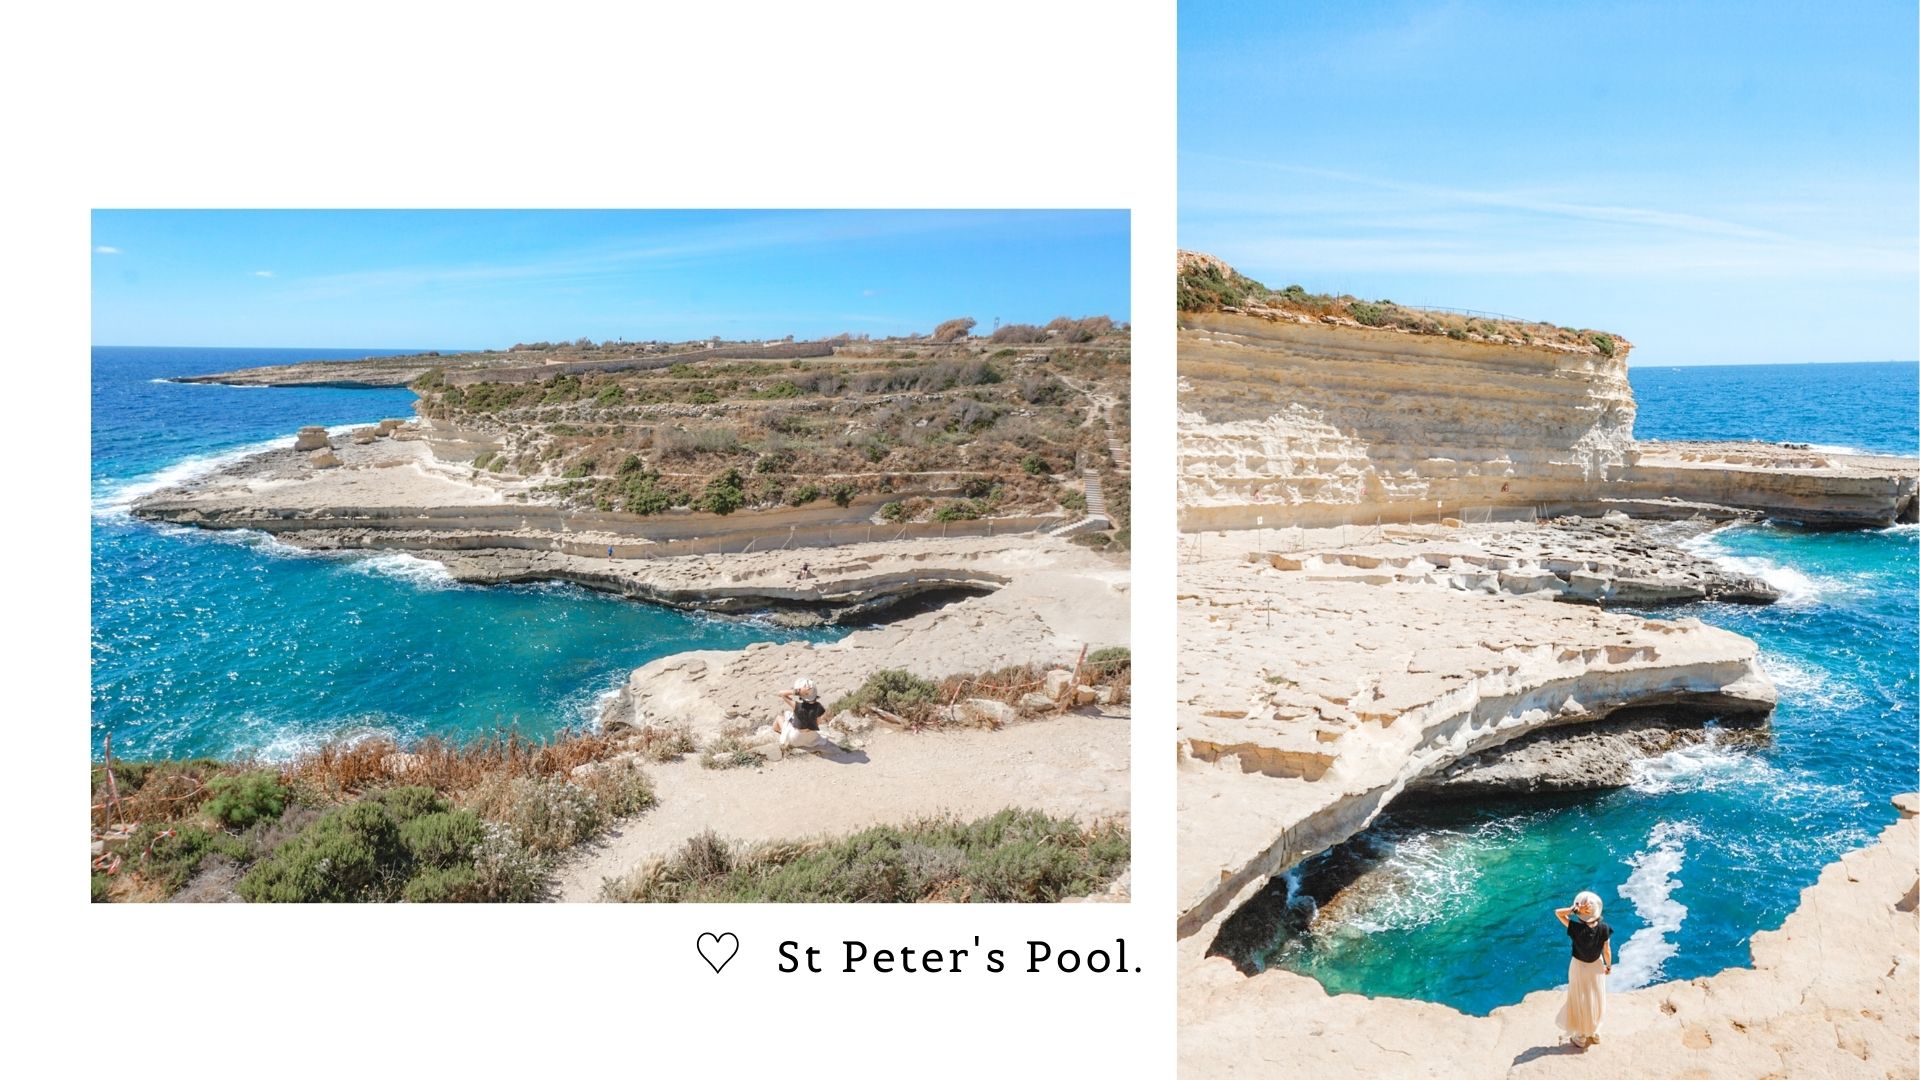 St Peter's Pool île de Malte comment s'y rendre ?